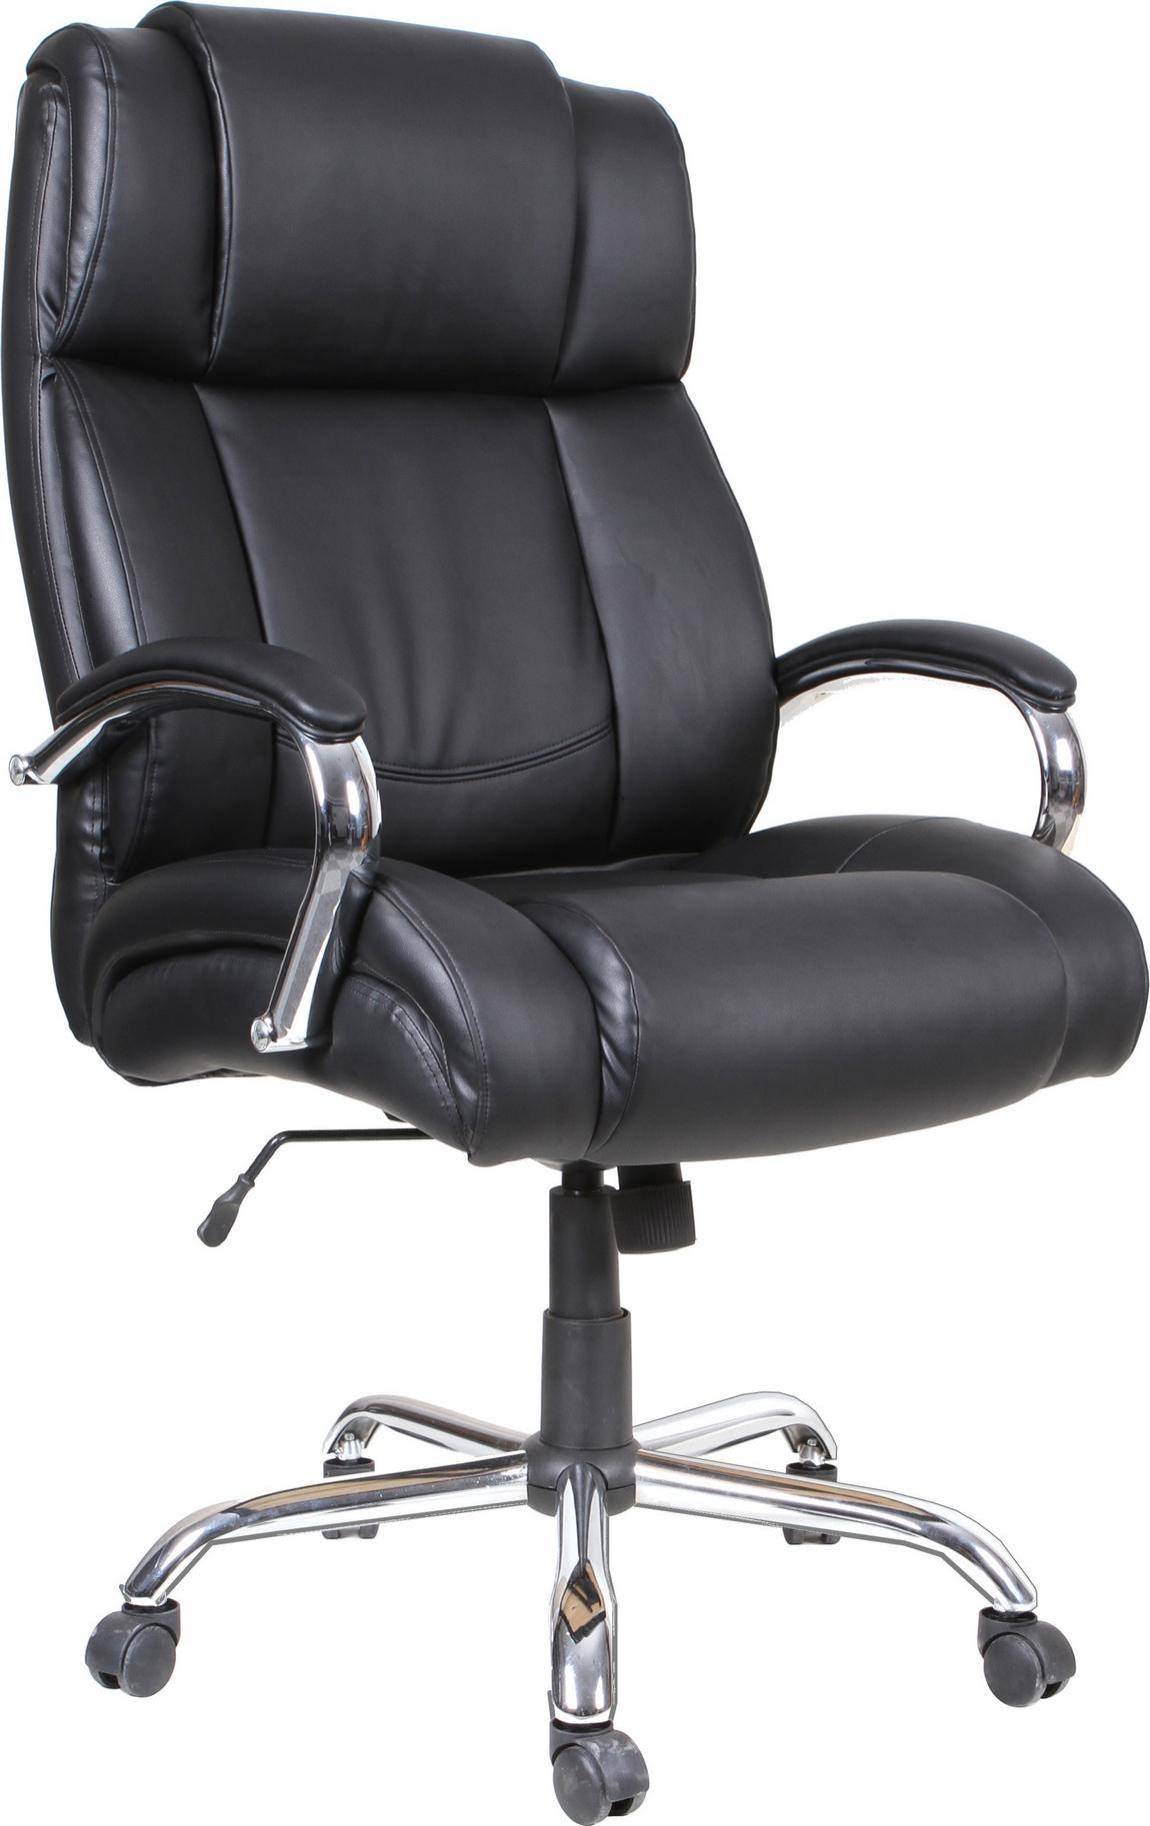 Heavy Duty Office Chair 450 Lbs - AQ Series